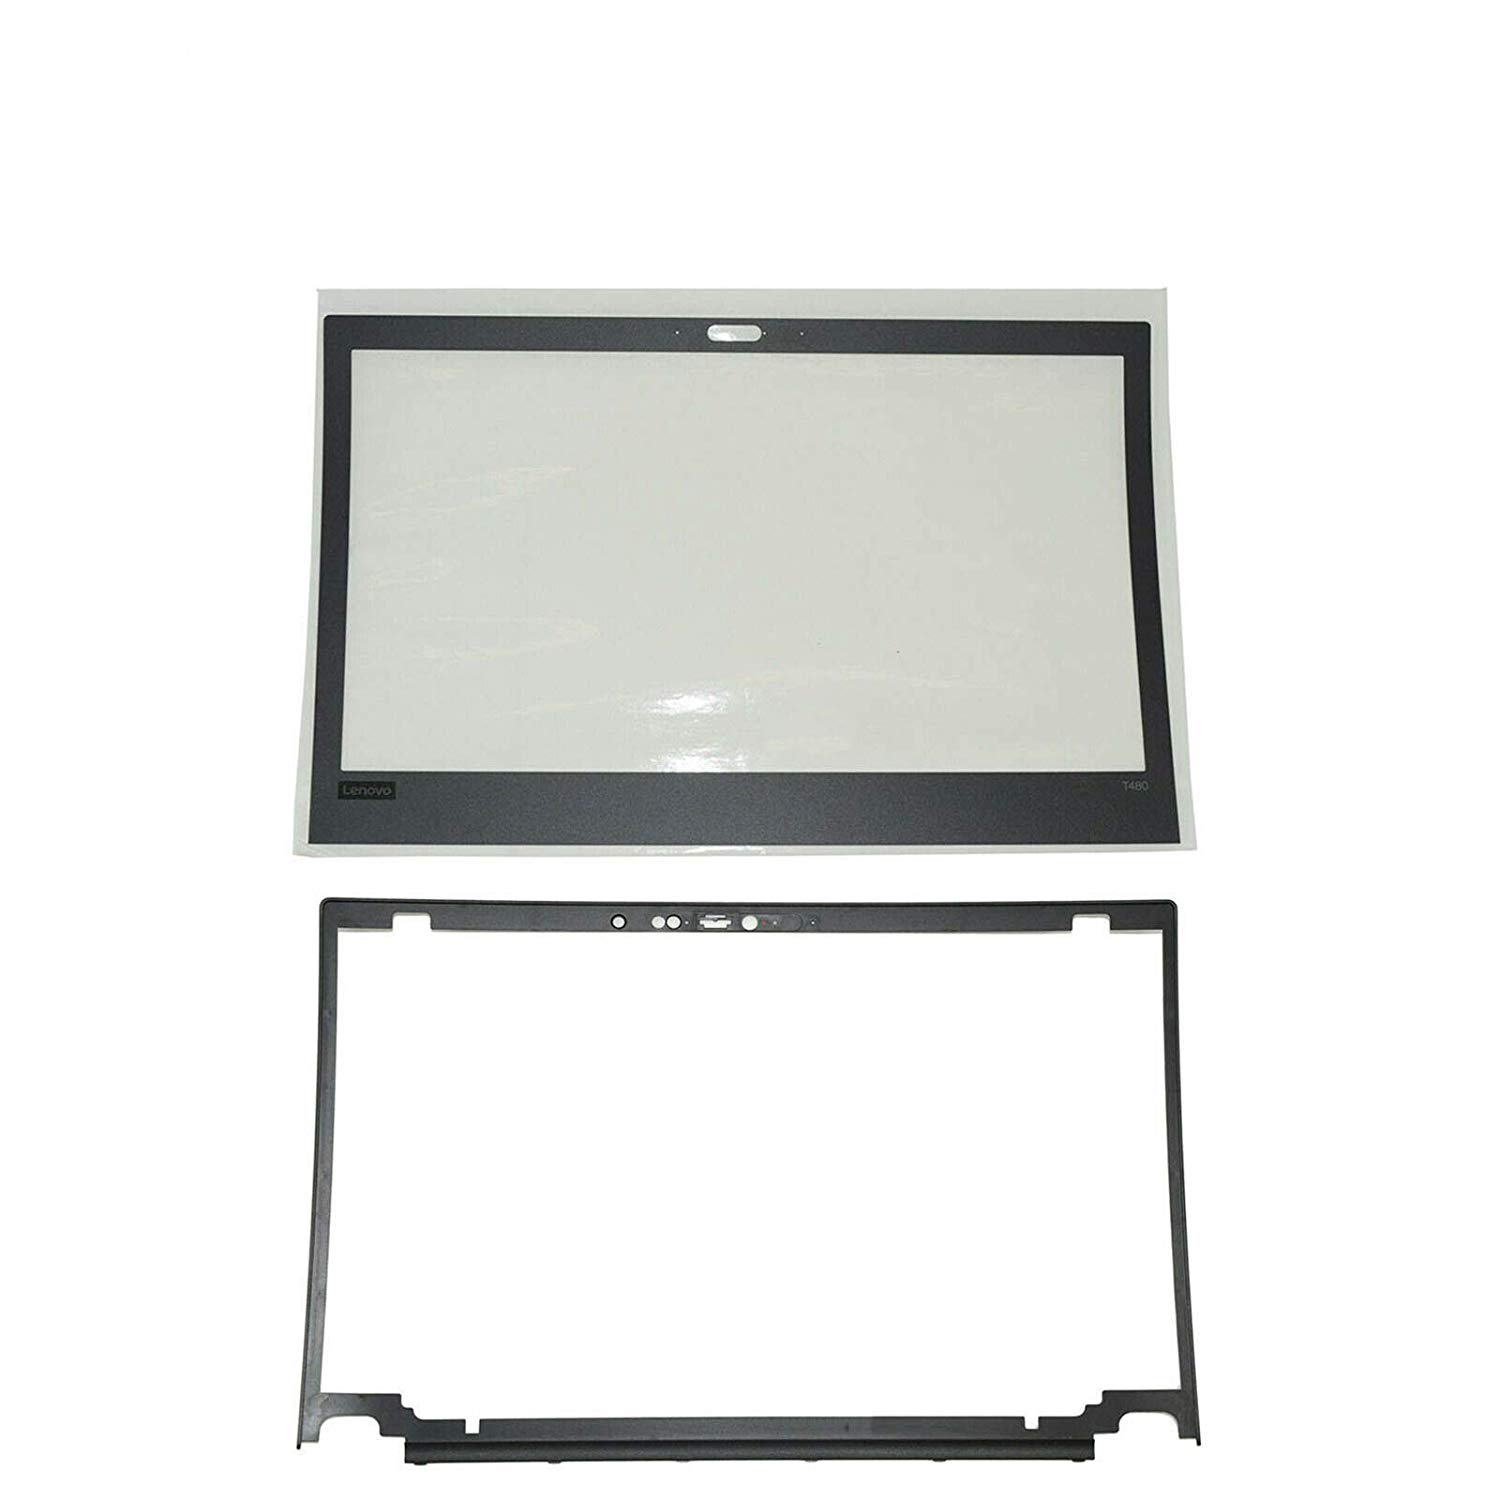 01YR487 for Lenovo Thinkpad T480 LCD Bezel Kit Sheet, Camera Cover, Frame